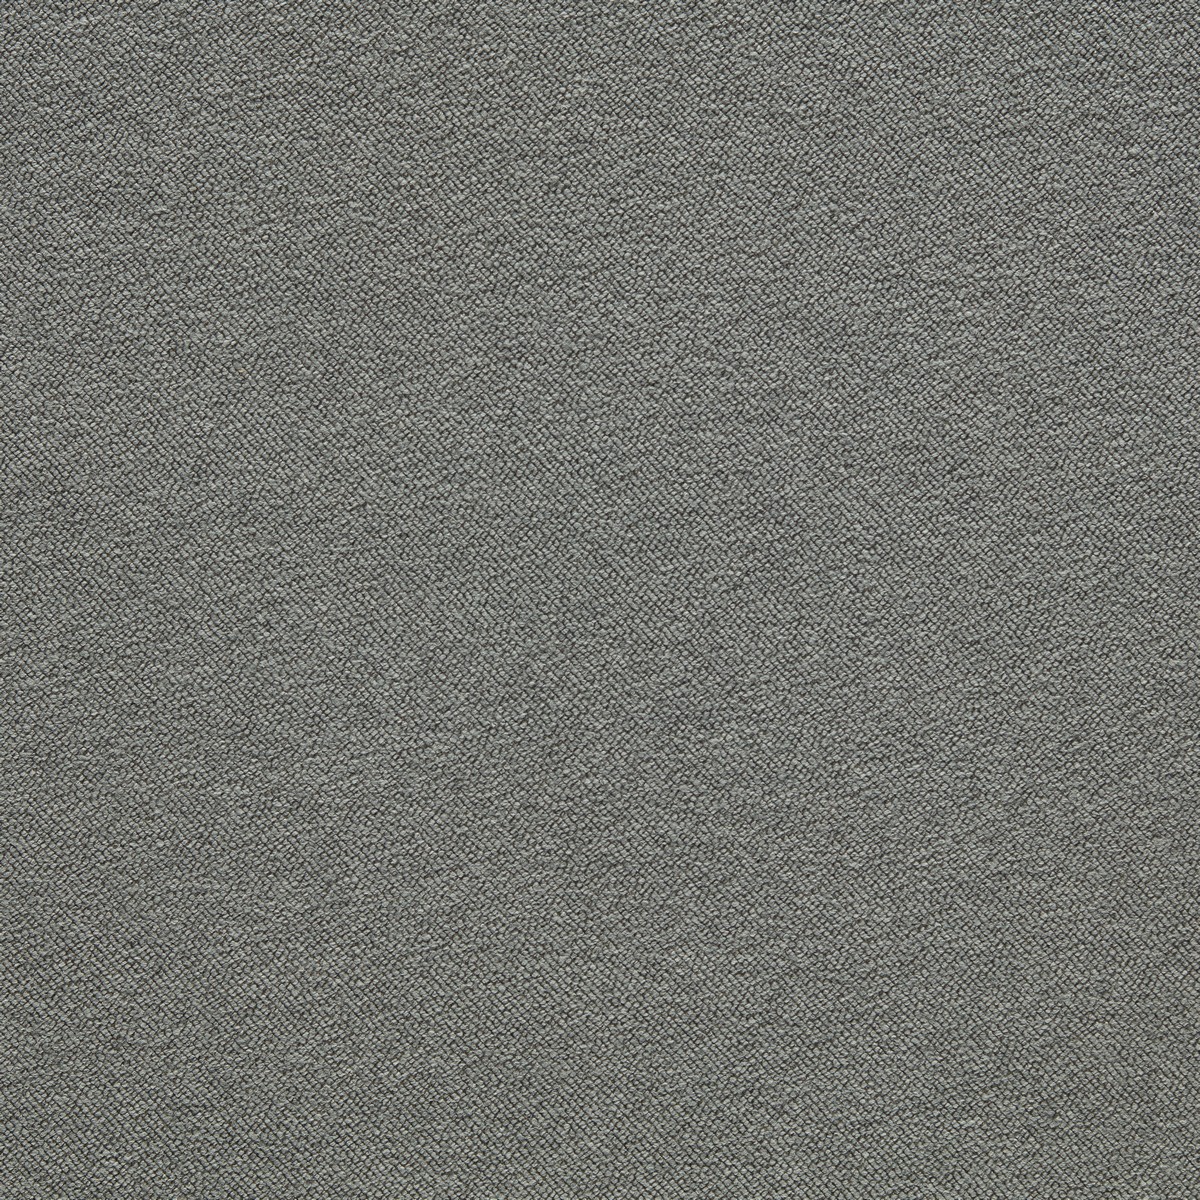 Zoffany Boucle Empire Grey Fabric by Zoffany